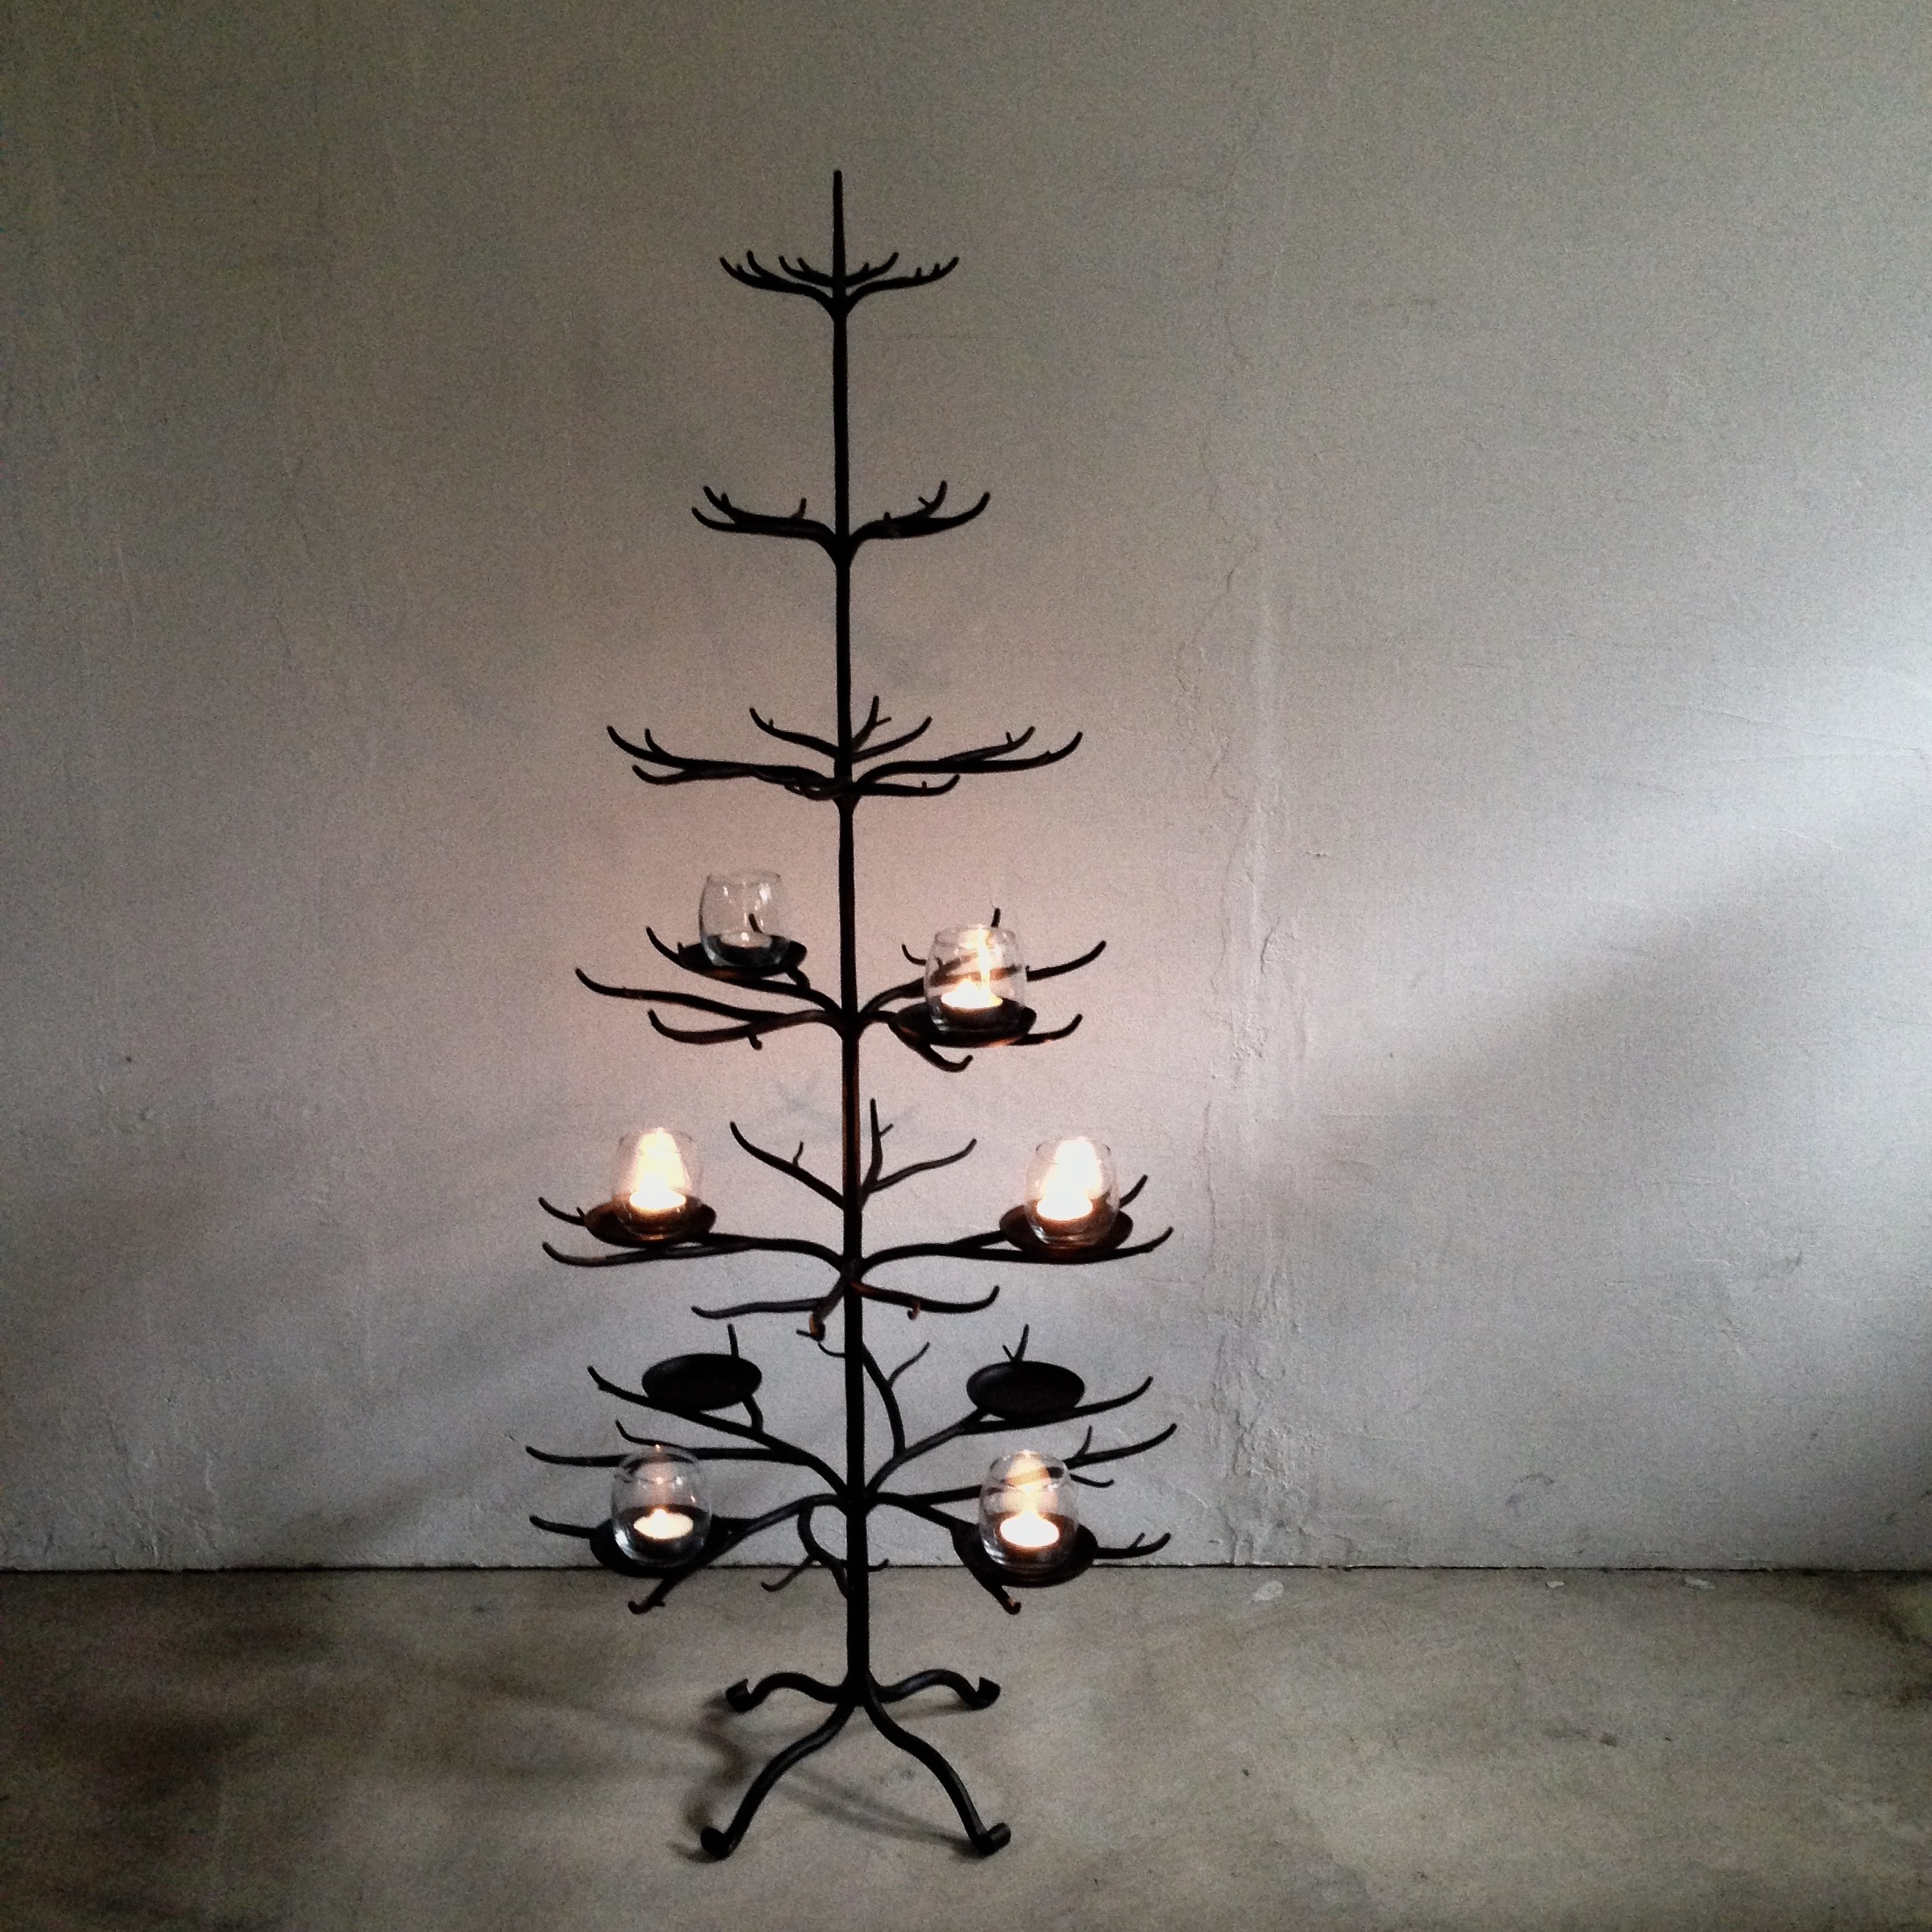 ロートアイアン製クリスマスツリー Iichi ハンドメイド クラフト作品 手仕事品の通販